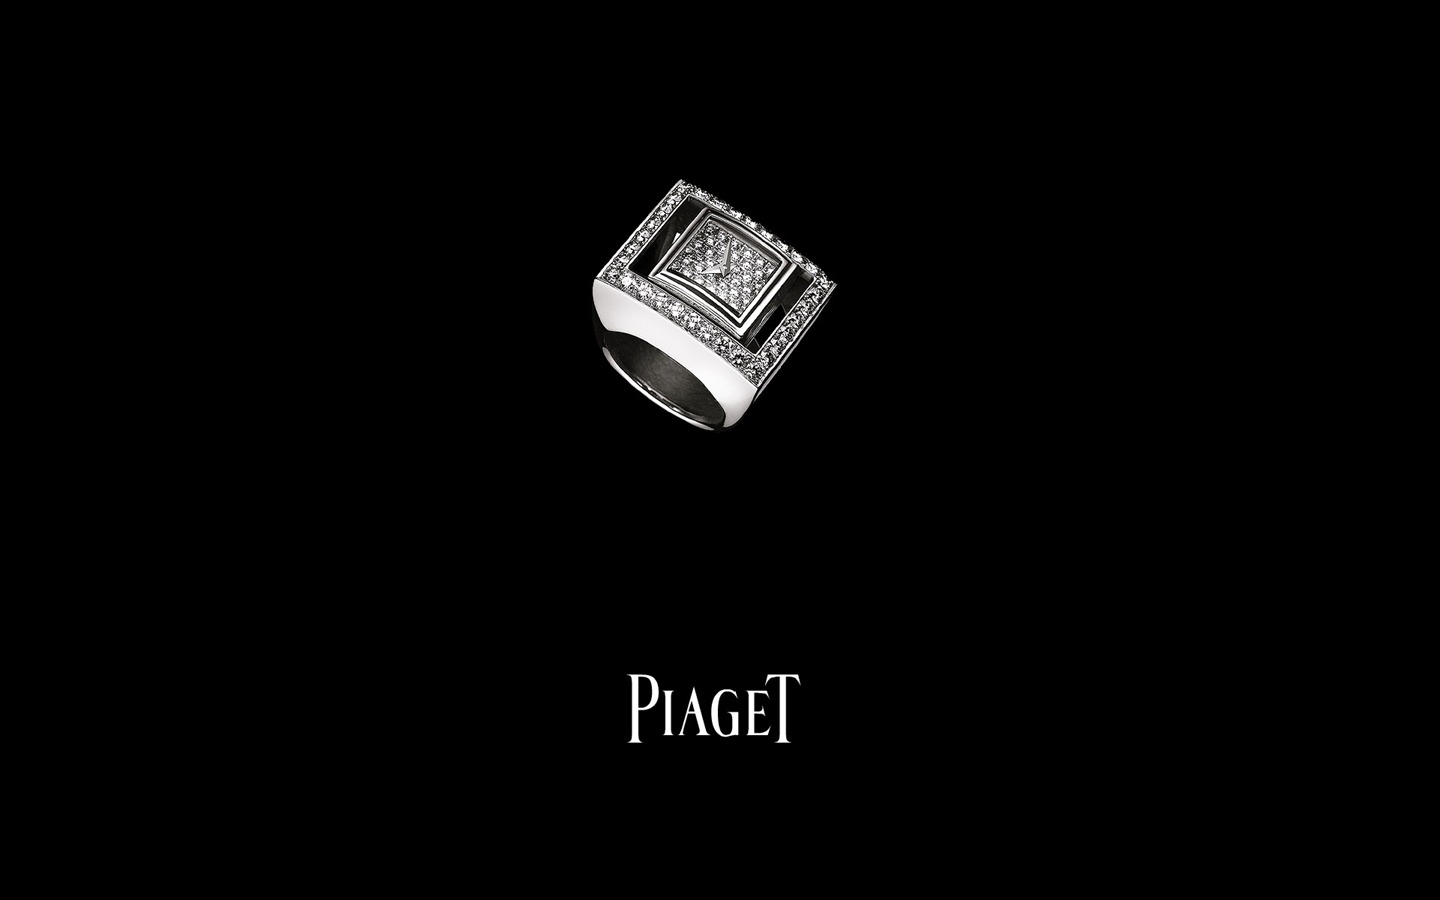 Piaget Diamante fondos de escritorio de reloj (2) #2 - 1440x900